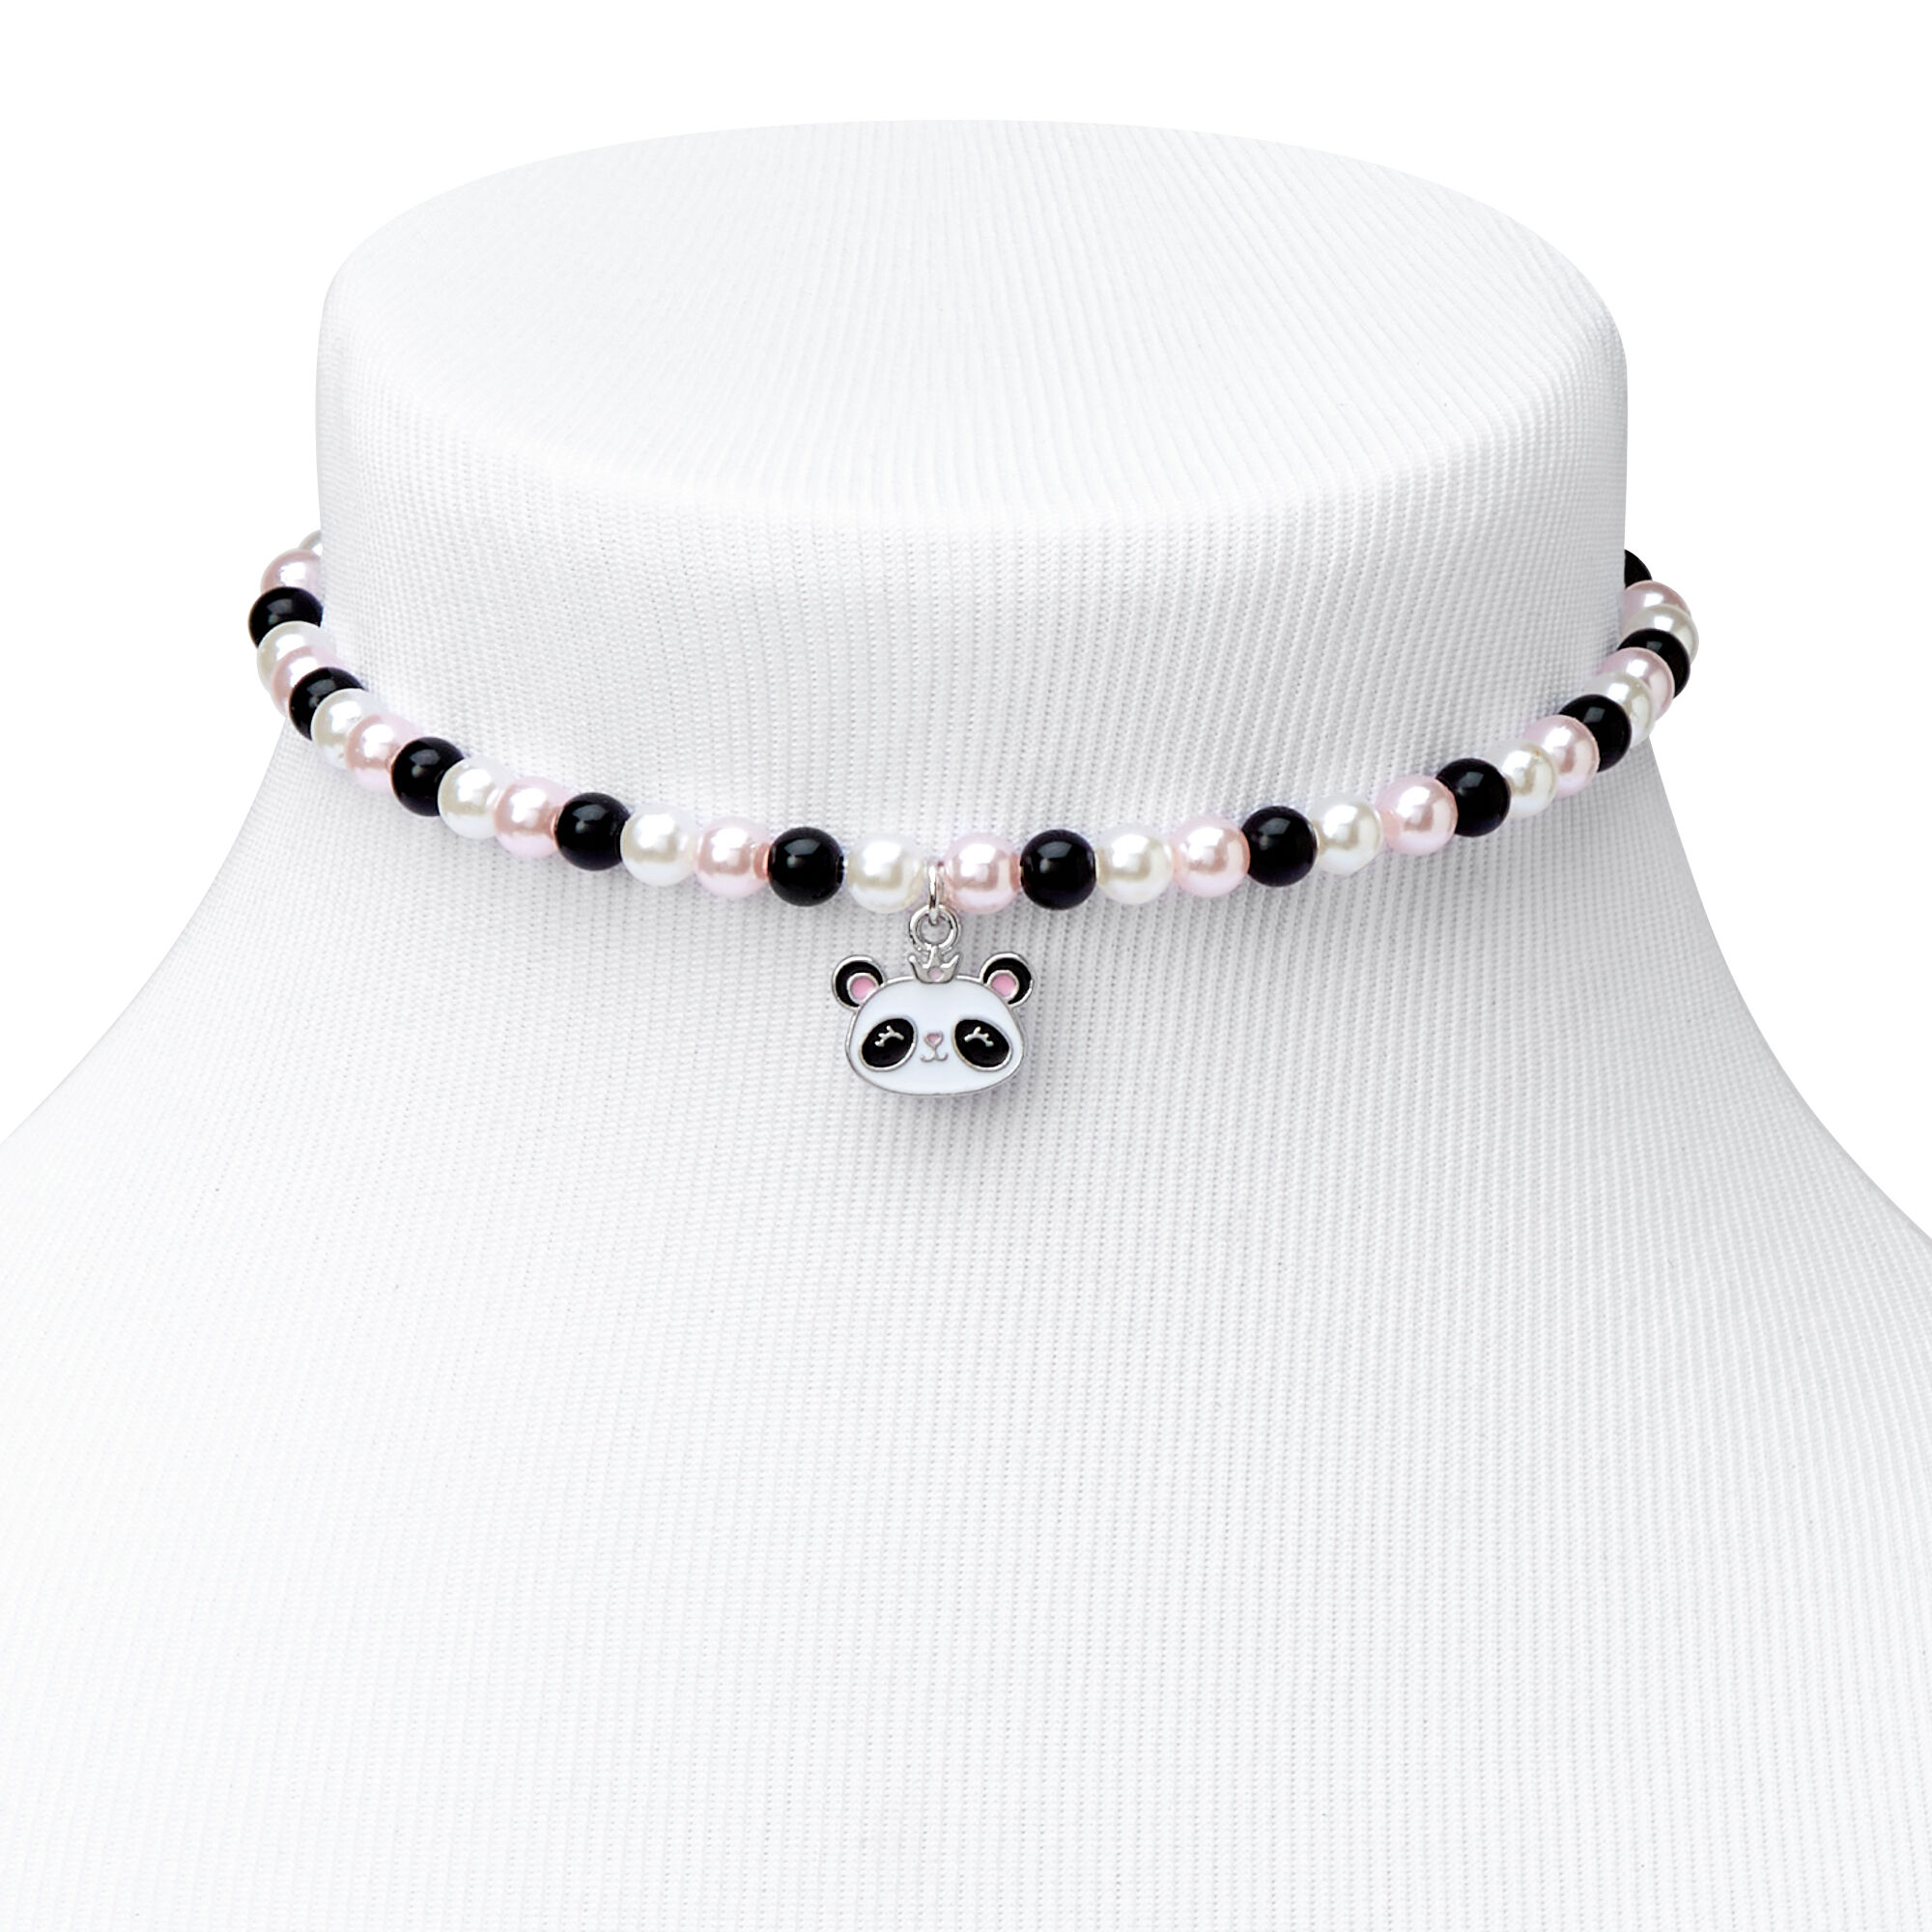 Panda Penguin Bond: Friendship Bracelet Set for Unbreakable  Connections